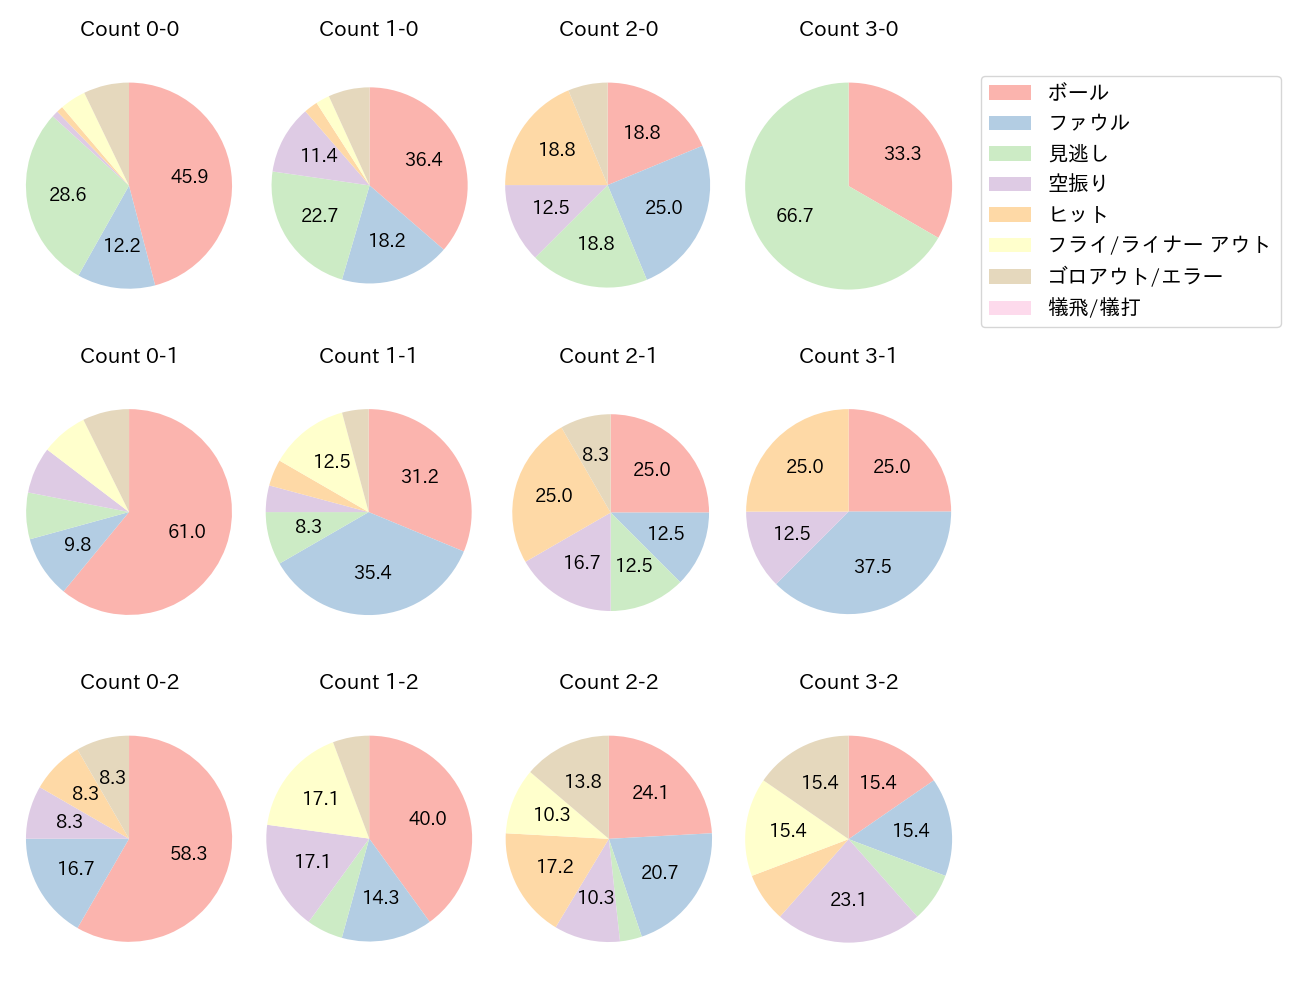 石川 昂弥の球数分布(2023年5月)